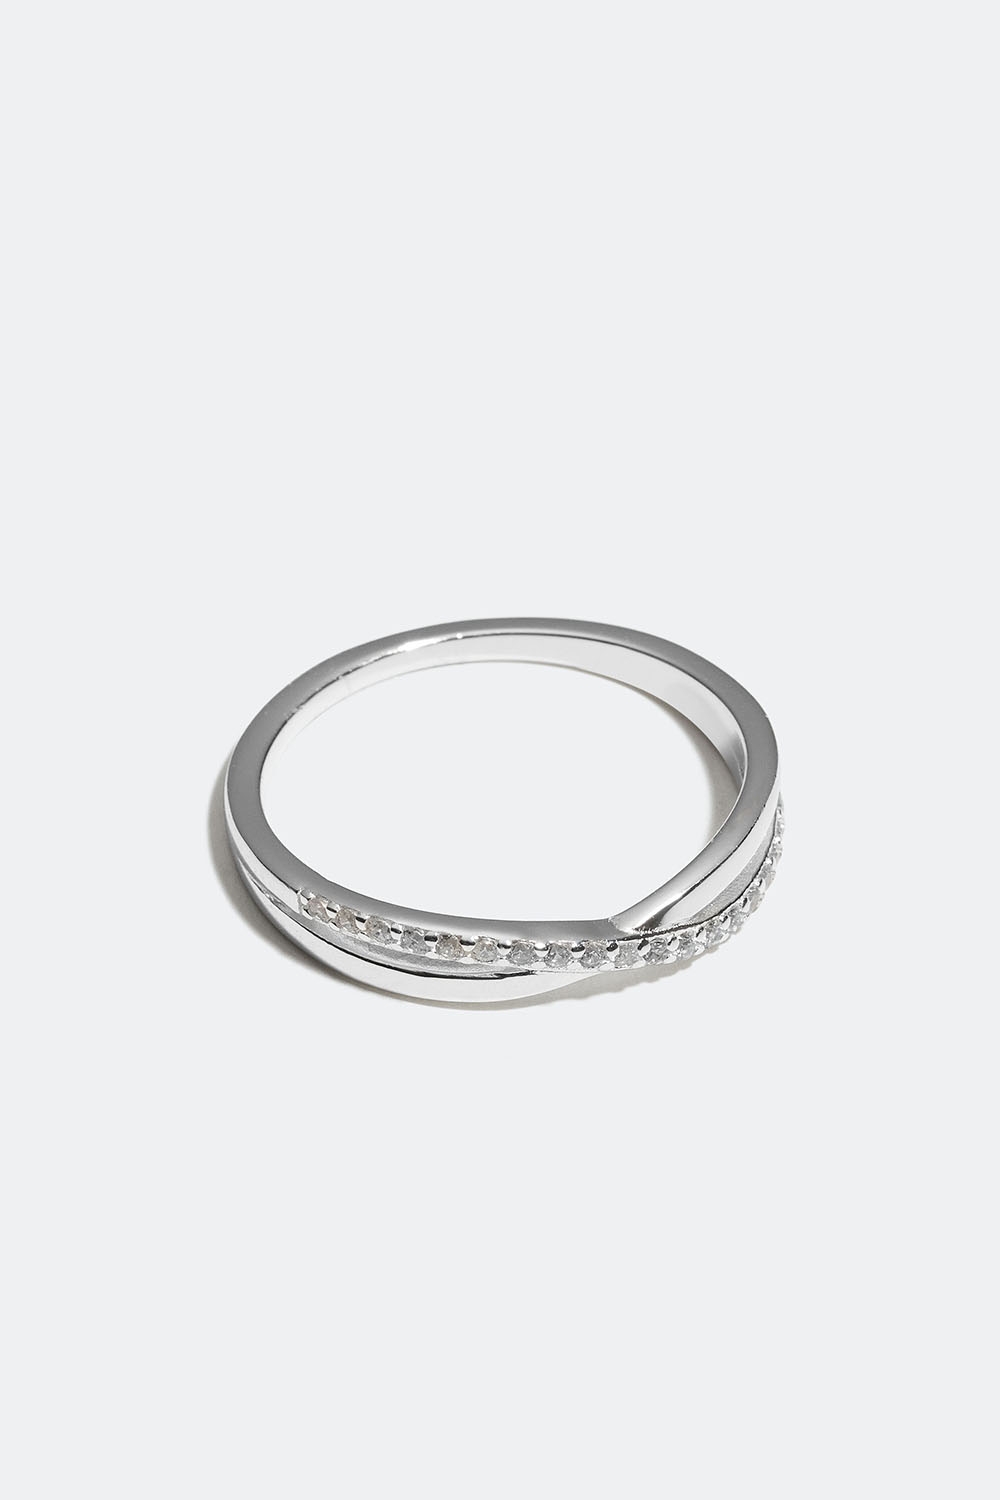 Ring i ekte sølv med krysset design og Cubic Zirconia i gruppen Ekte sølv / Sølvringer / Sølv hos Glitter (55600065)